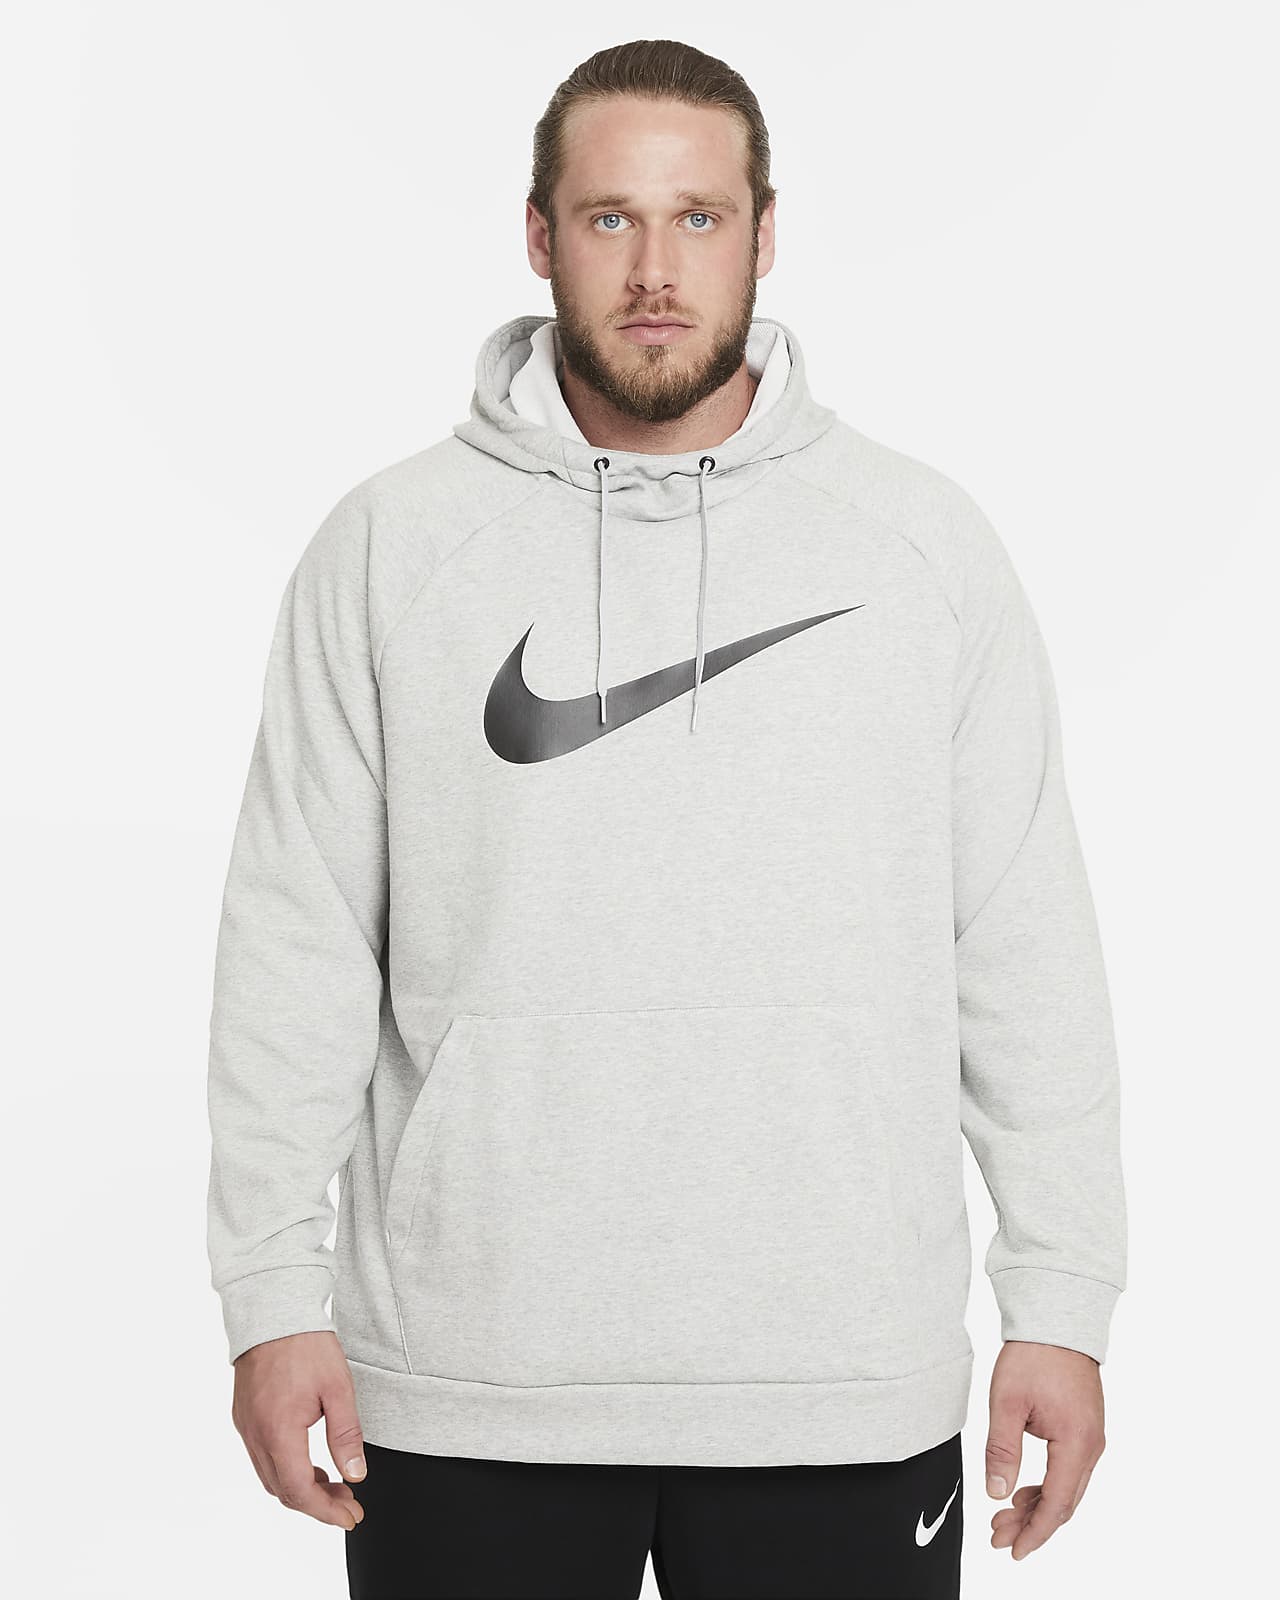 Geheugen Snoep hypotheek Nike Dry Graphic Men's Dri-FIT Hooded Fitness Pullover Hoodie. Nike LU